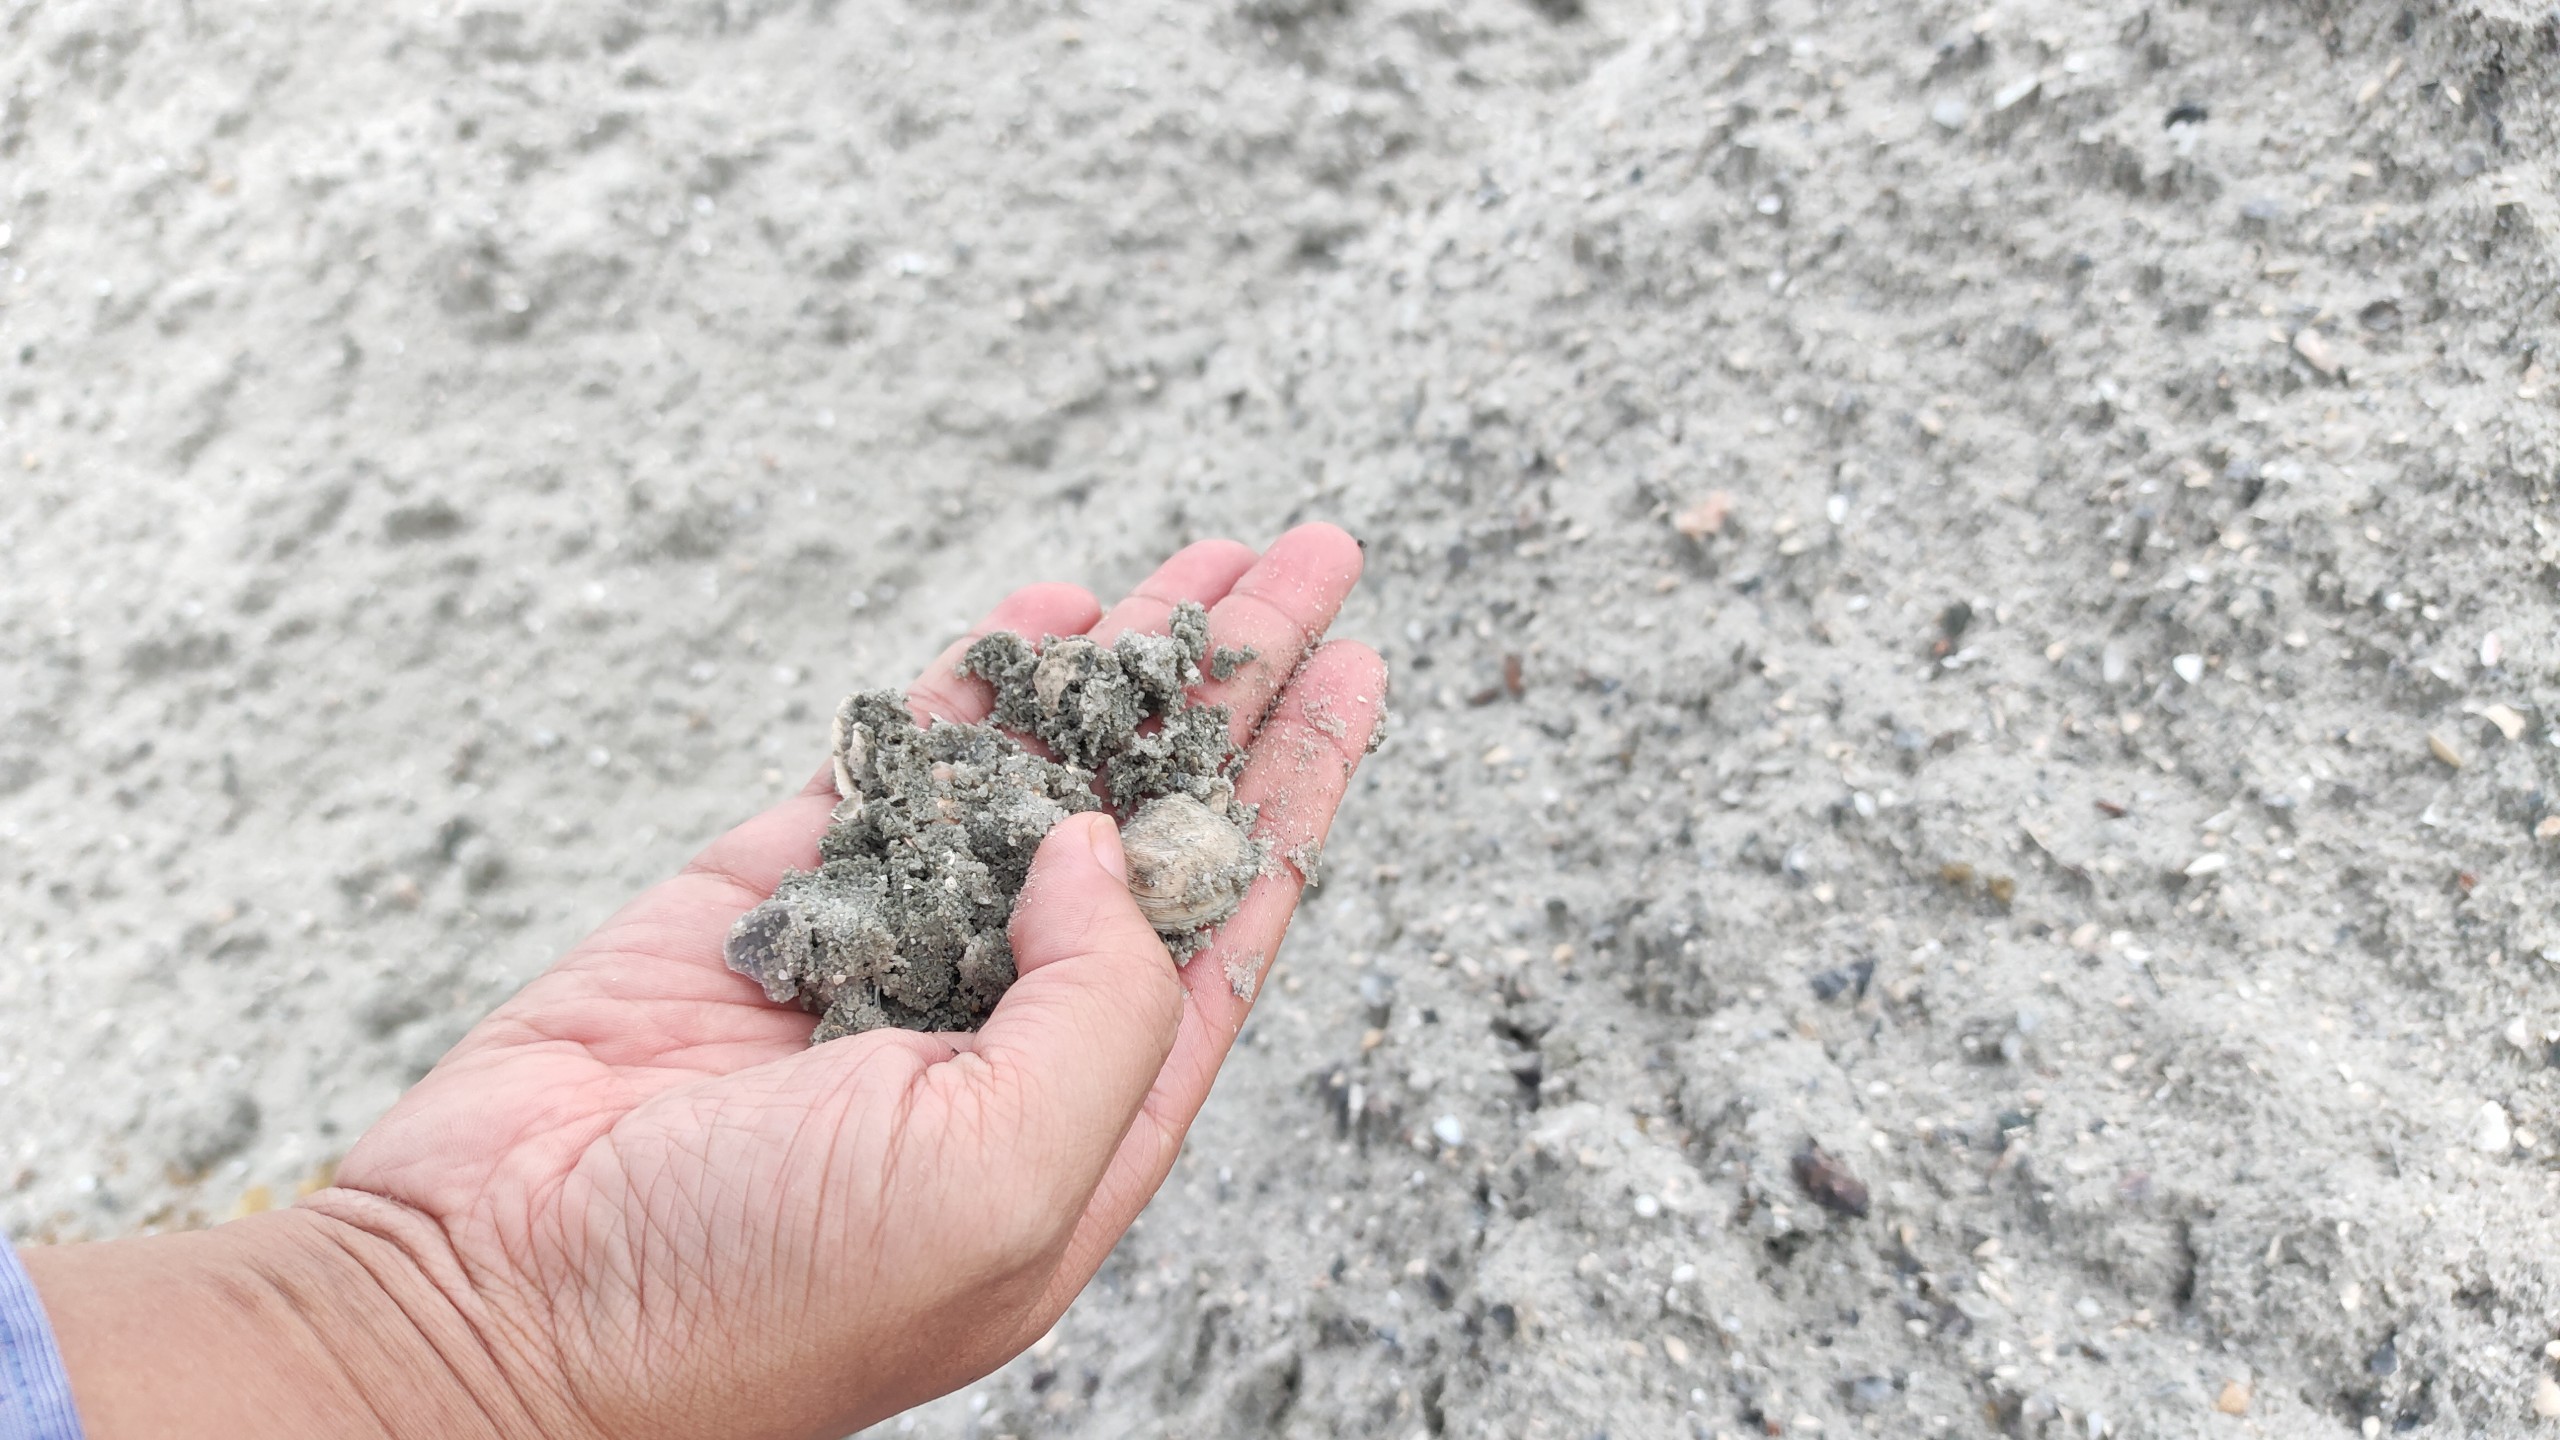 Vụ trục lợi từ nạo vét âu thuyền: Hàng trăm khối cát “lạ” xuất hiện ở dự án làm đường - Ảnh 2.